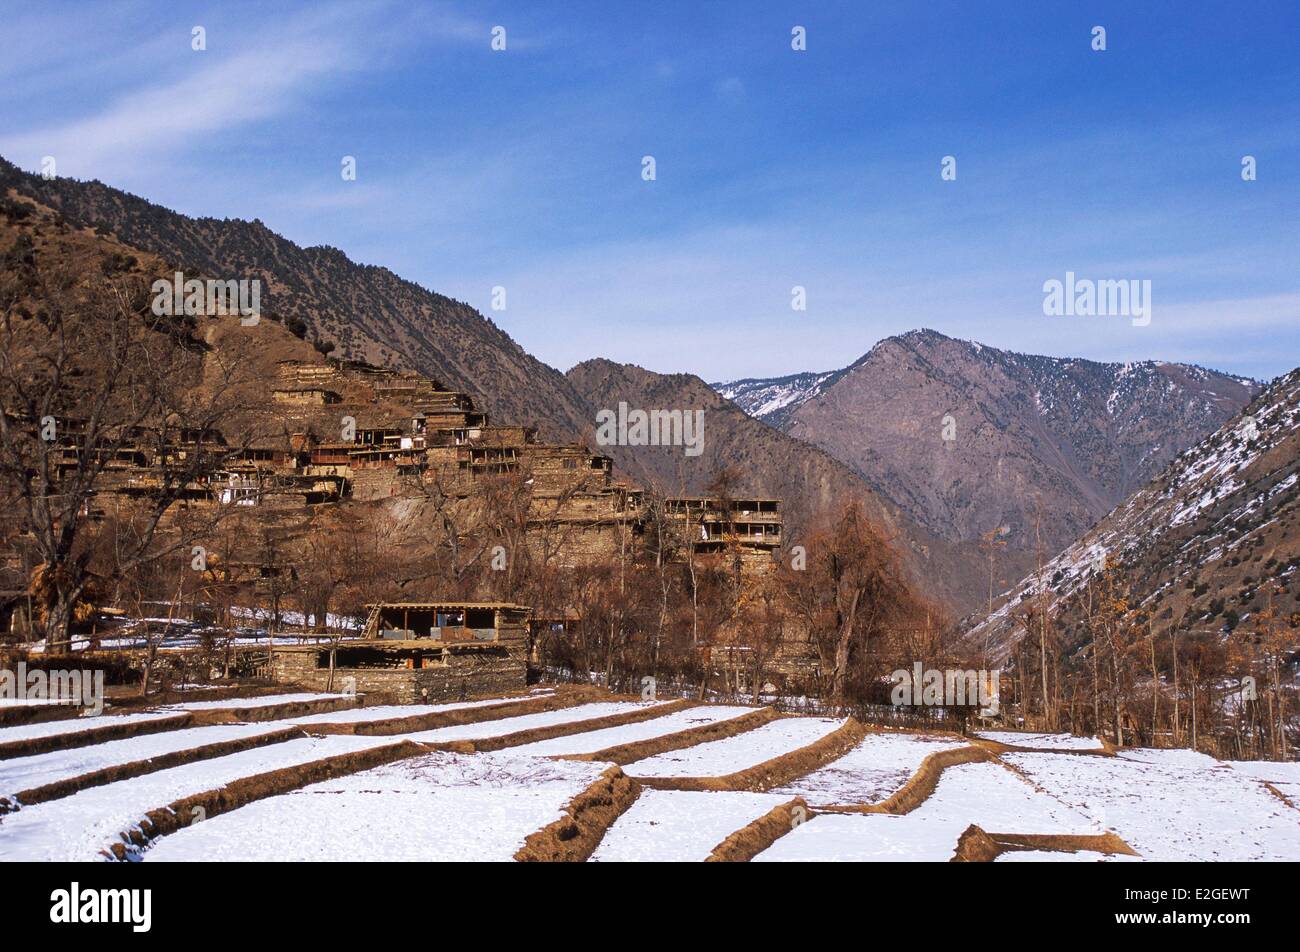 Vallées Kalash Khyber Pakhtunkhwa au Pakistan Bumburet Tarasguru la vallée village (1800 m) dans les villages d'hiver s'accrochent à des côtés abrupts d'étroites vallées Kalash afin de laisser quelques endroits plats pour les cultures Banque D'Images